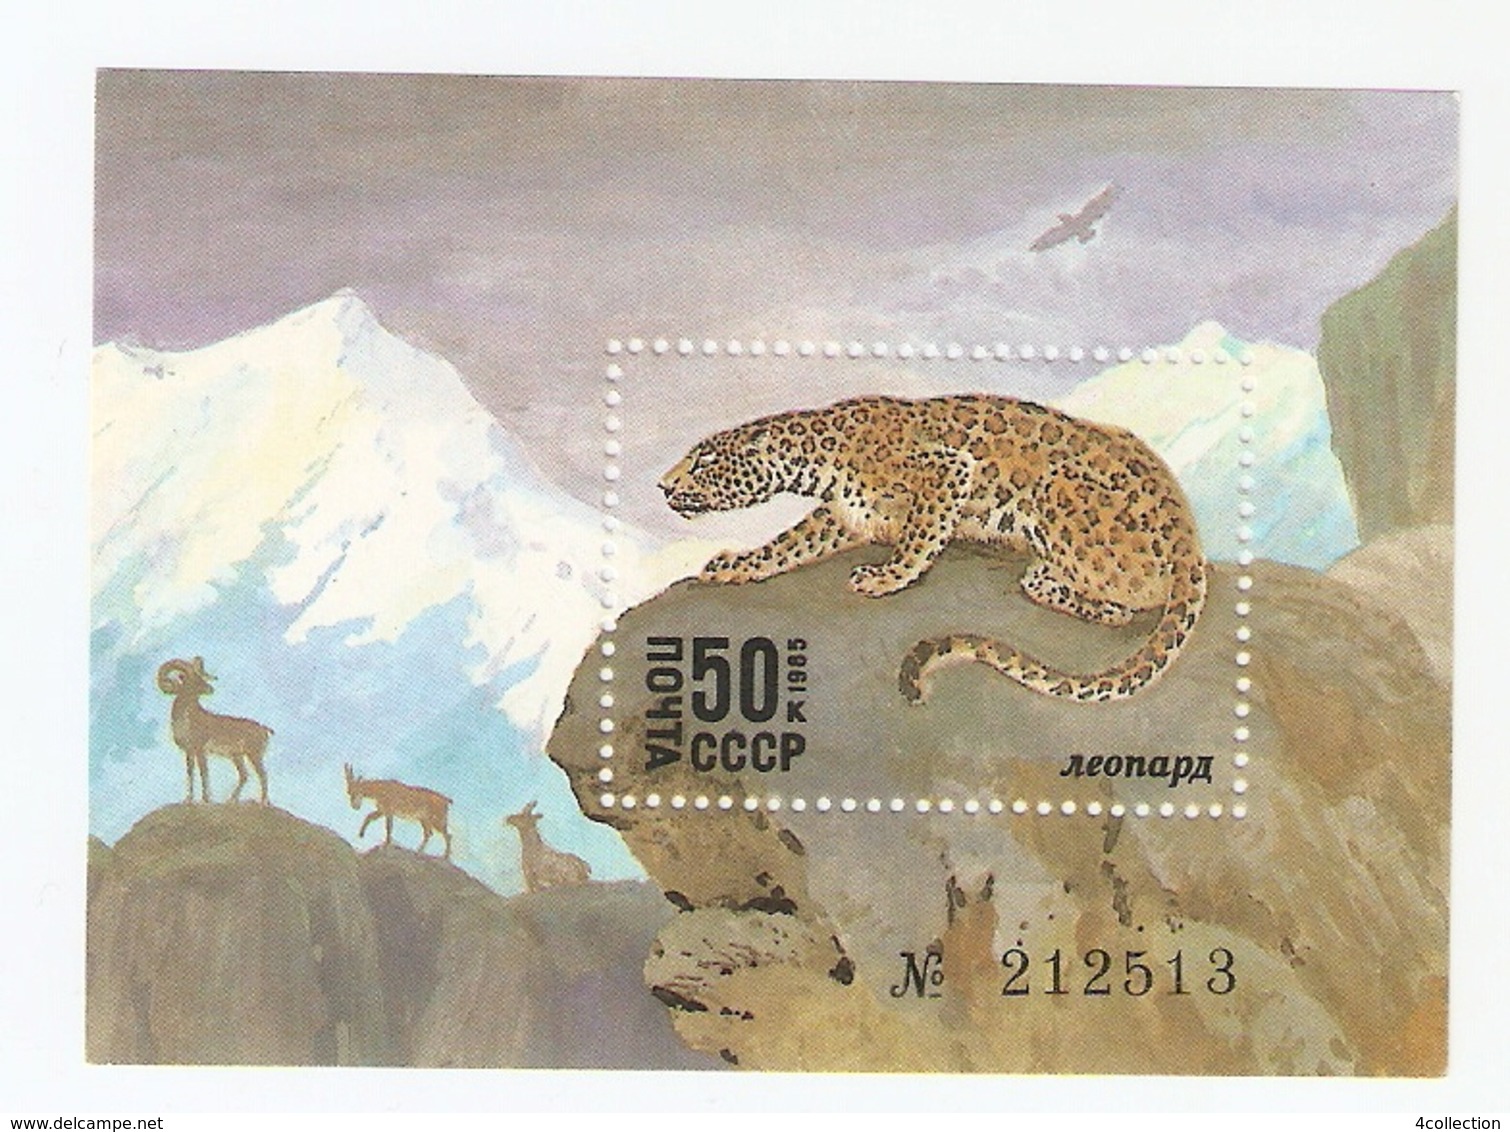 T. Russia USSR Soviet Stamp 1985 Wildlife Wild Animals Leopard Panther - Block Souvenir Sheet W/ No. 212513 - Neufs